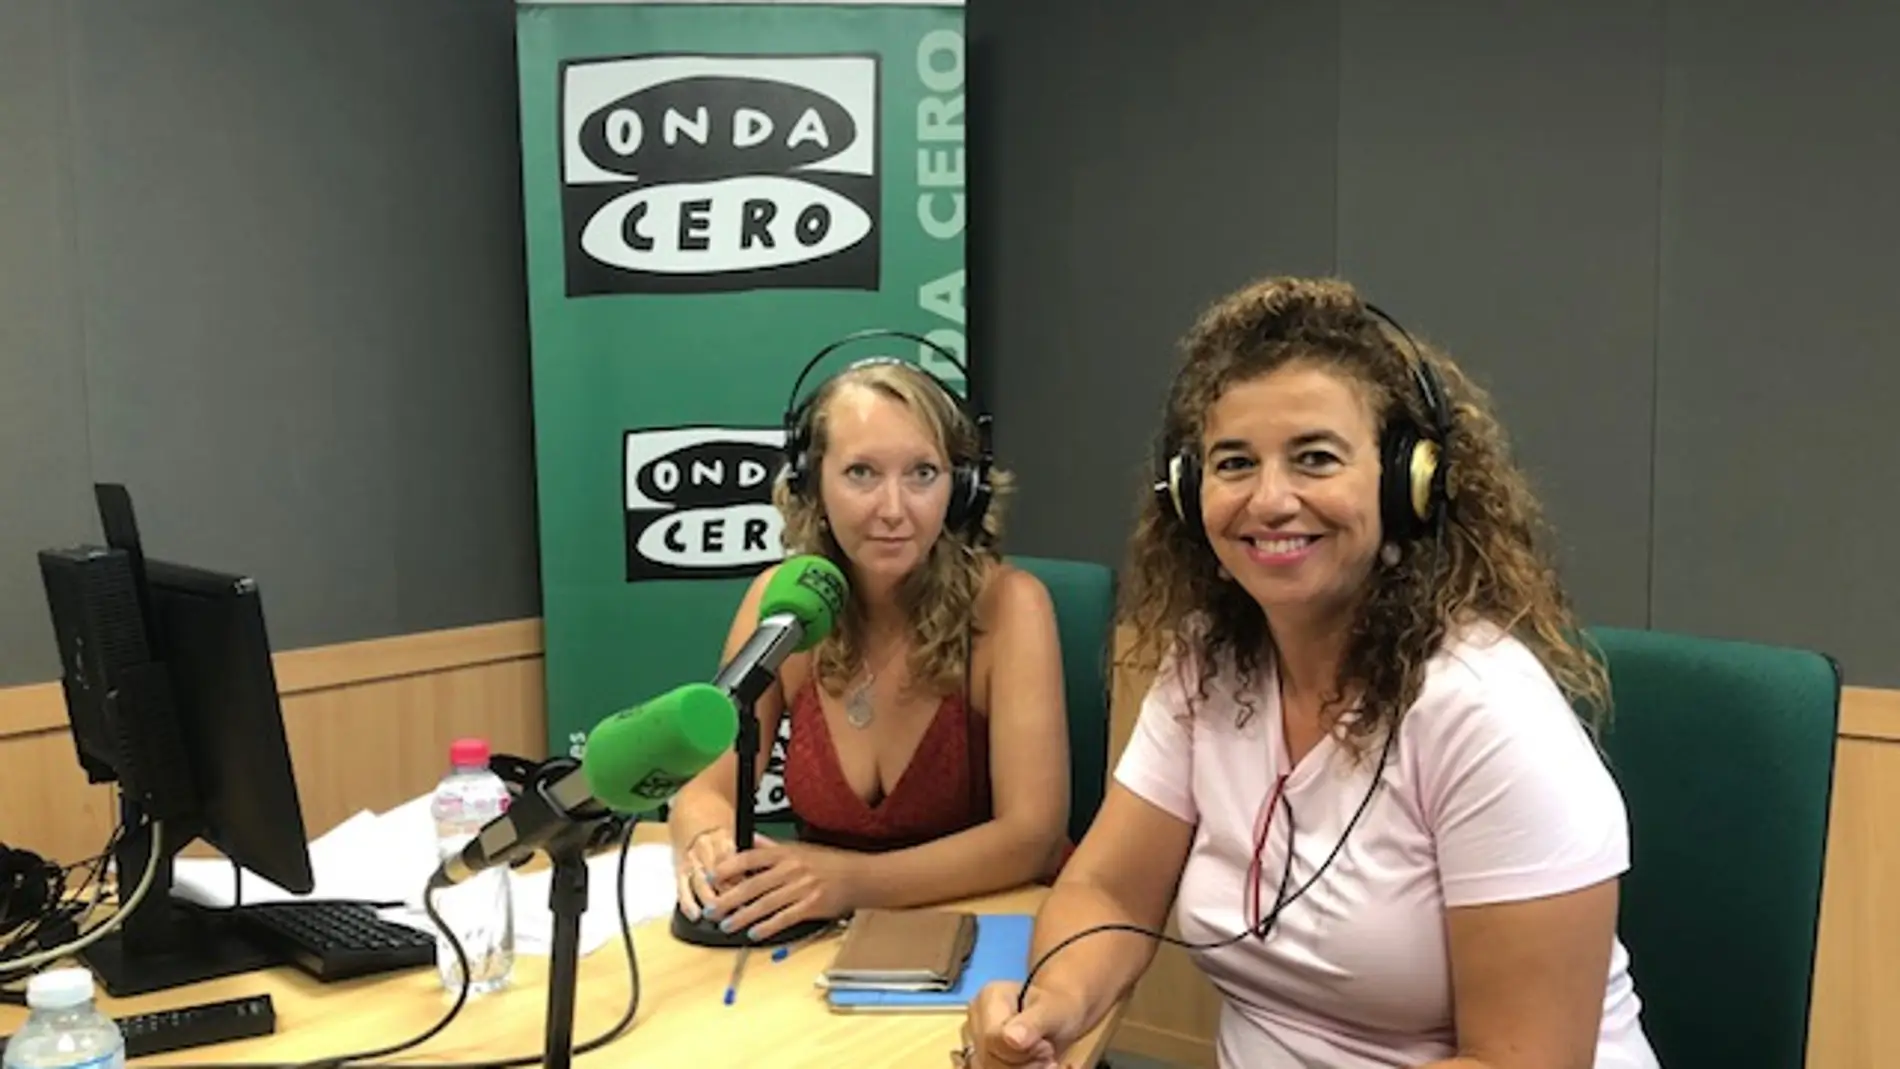 La consellera de Presidencia y portavoz del Govern, Pilar Costa, valora la actualidad en Onda Cero Mallorca.